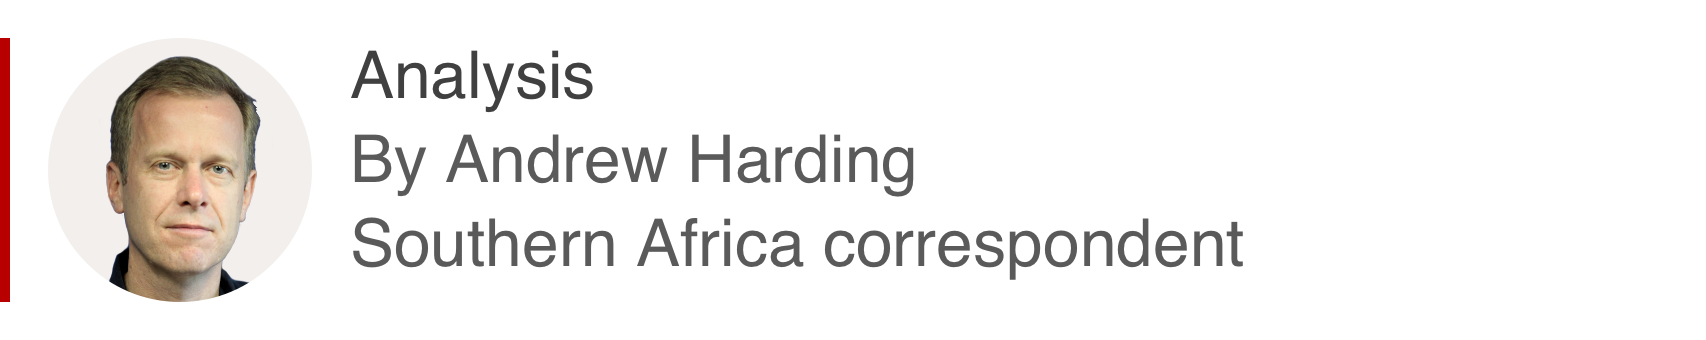 Анализатор Эндрю Хардинга, корреспондента из Южной Африки